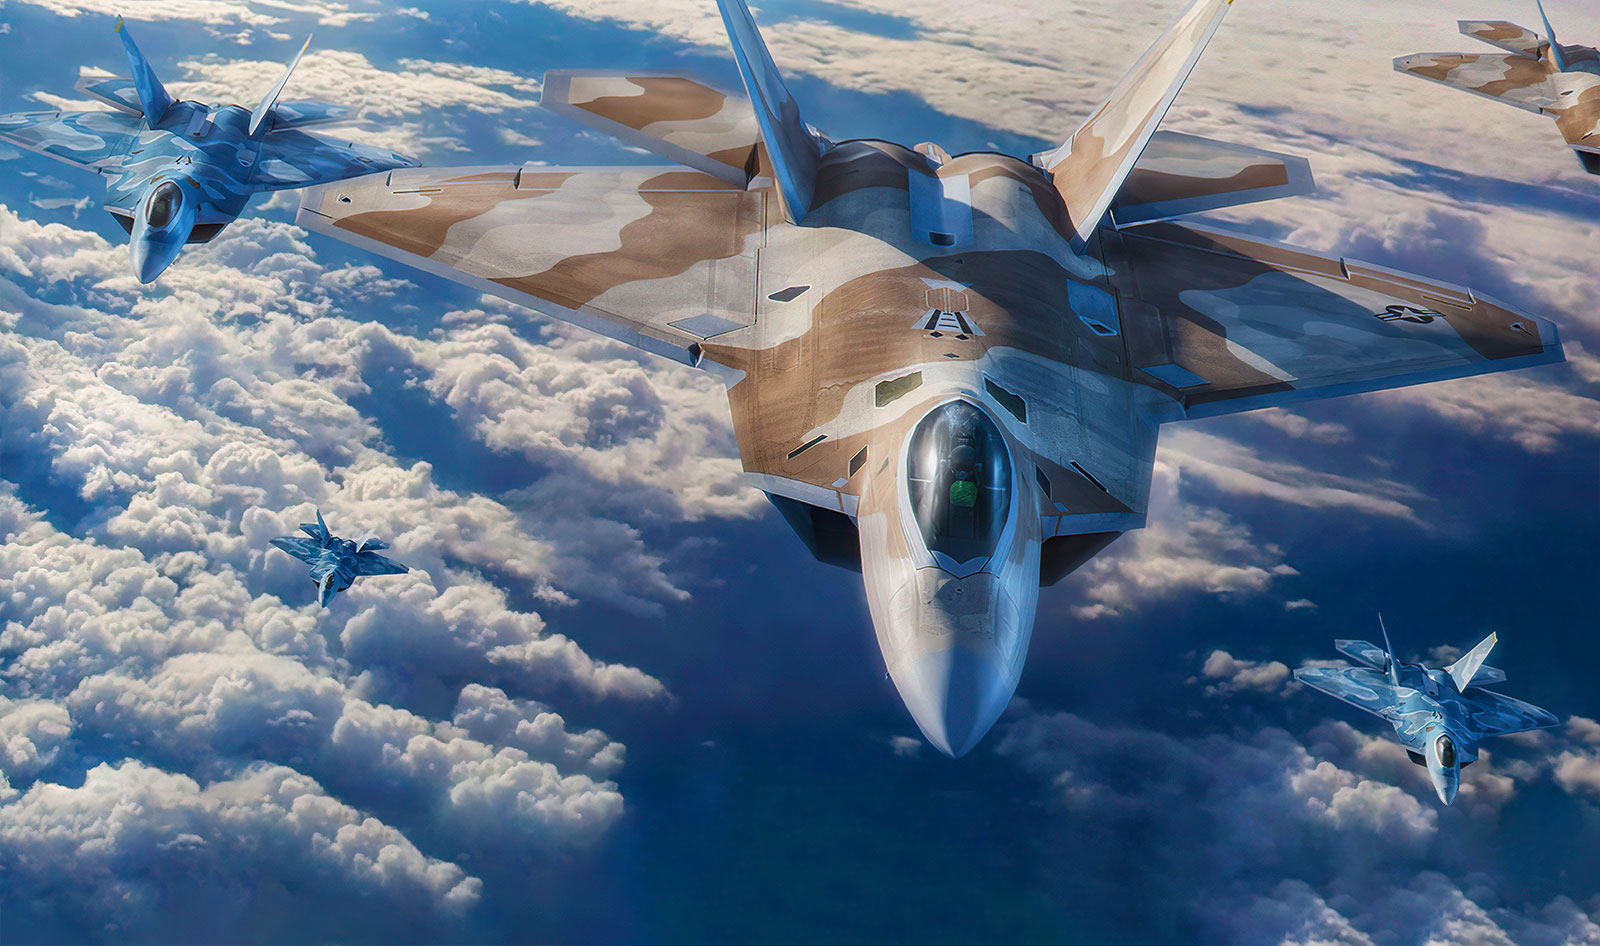 20 fotos impresionantes que demuestran que el F-22 es una potencia